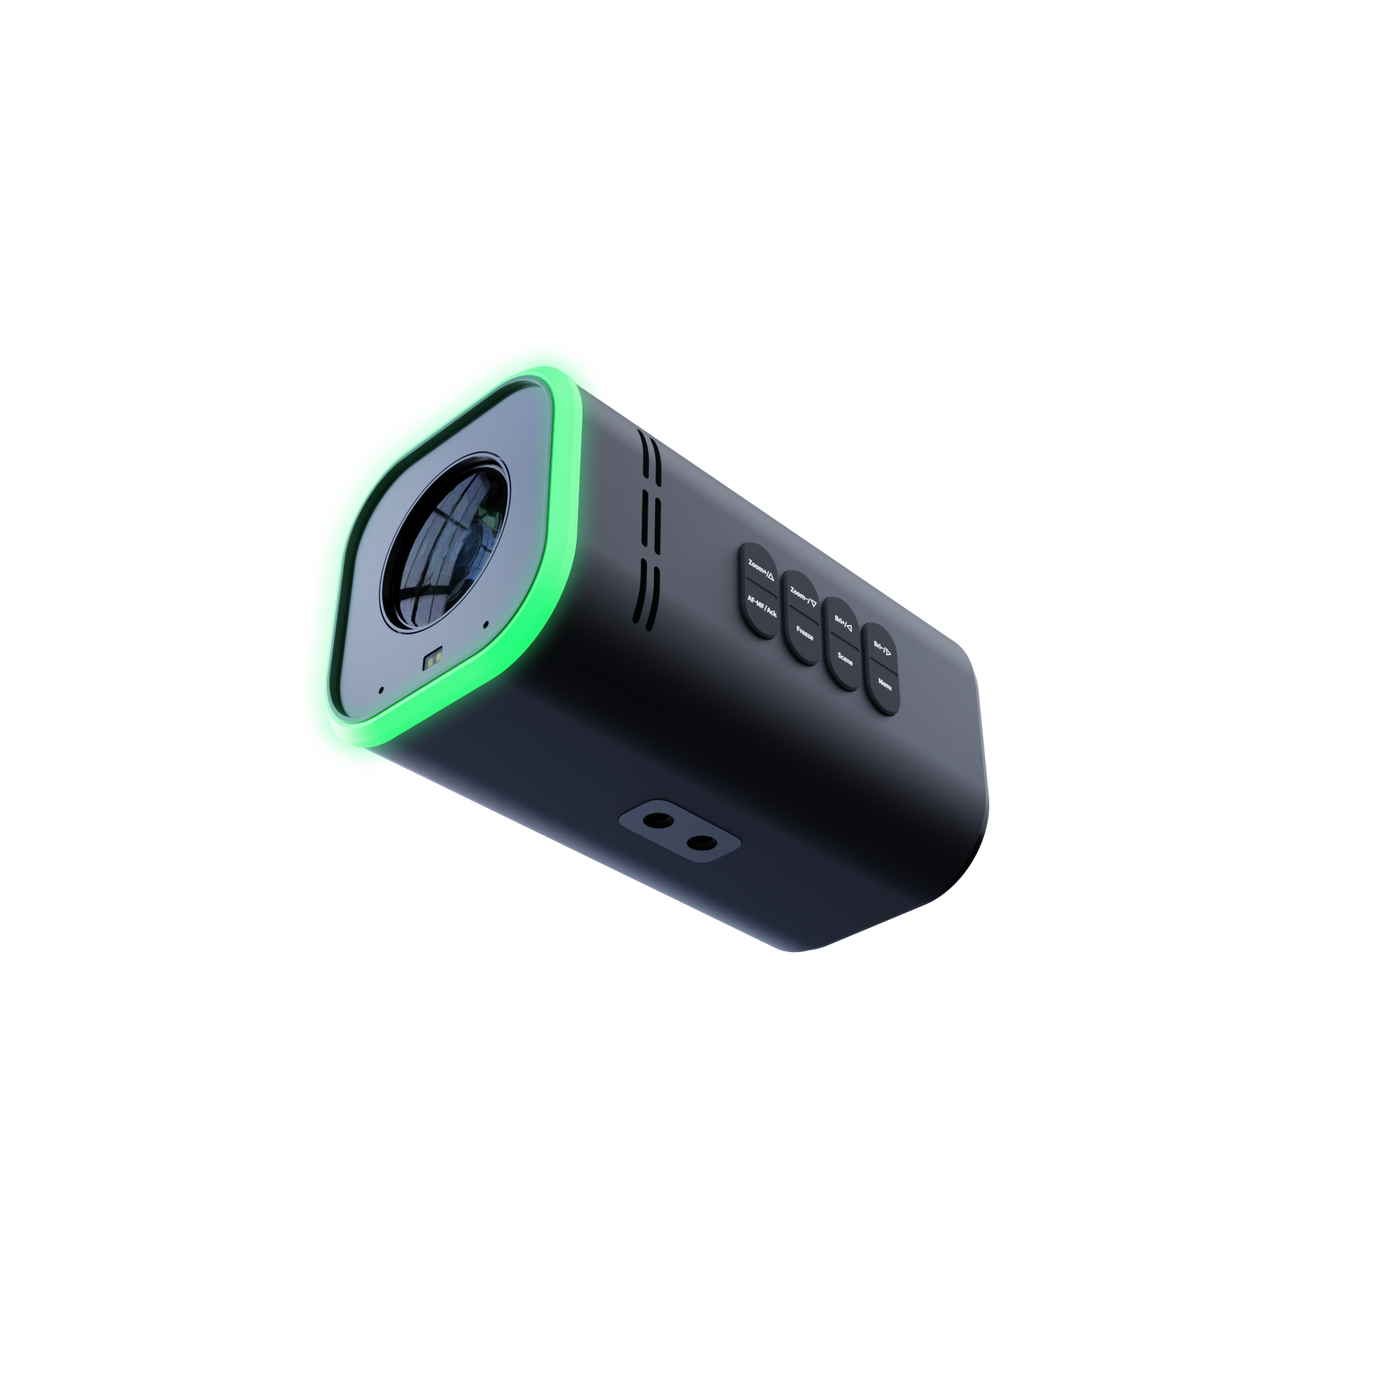 BirdDog MAKI Ultra 4K 20x Zoom Box Camera (Black)